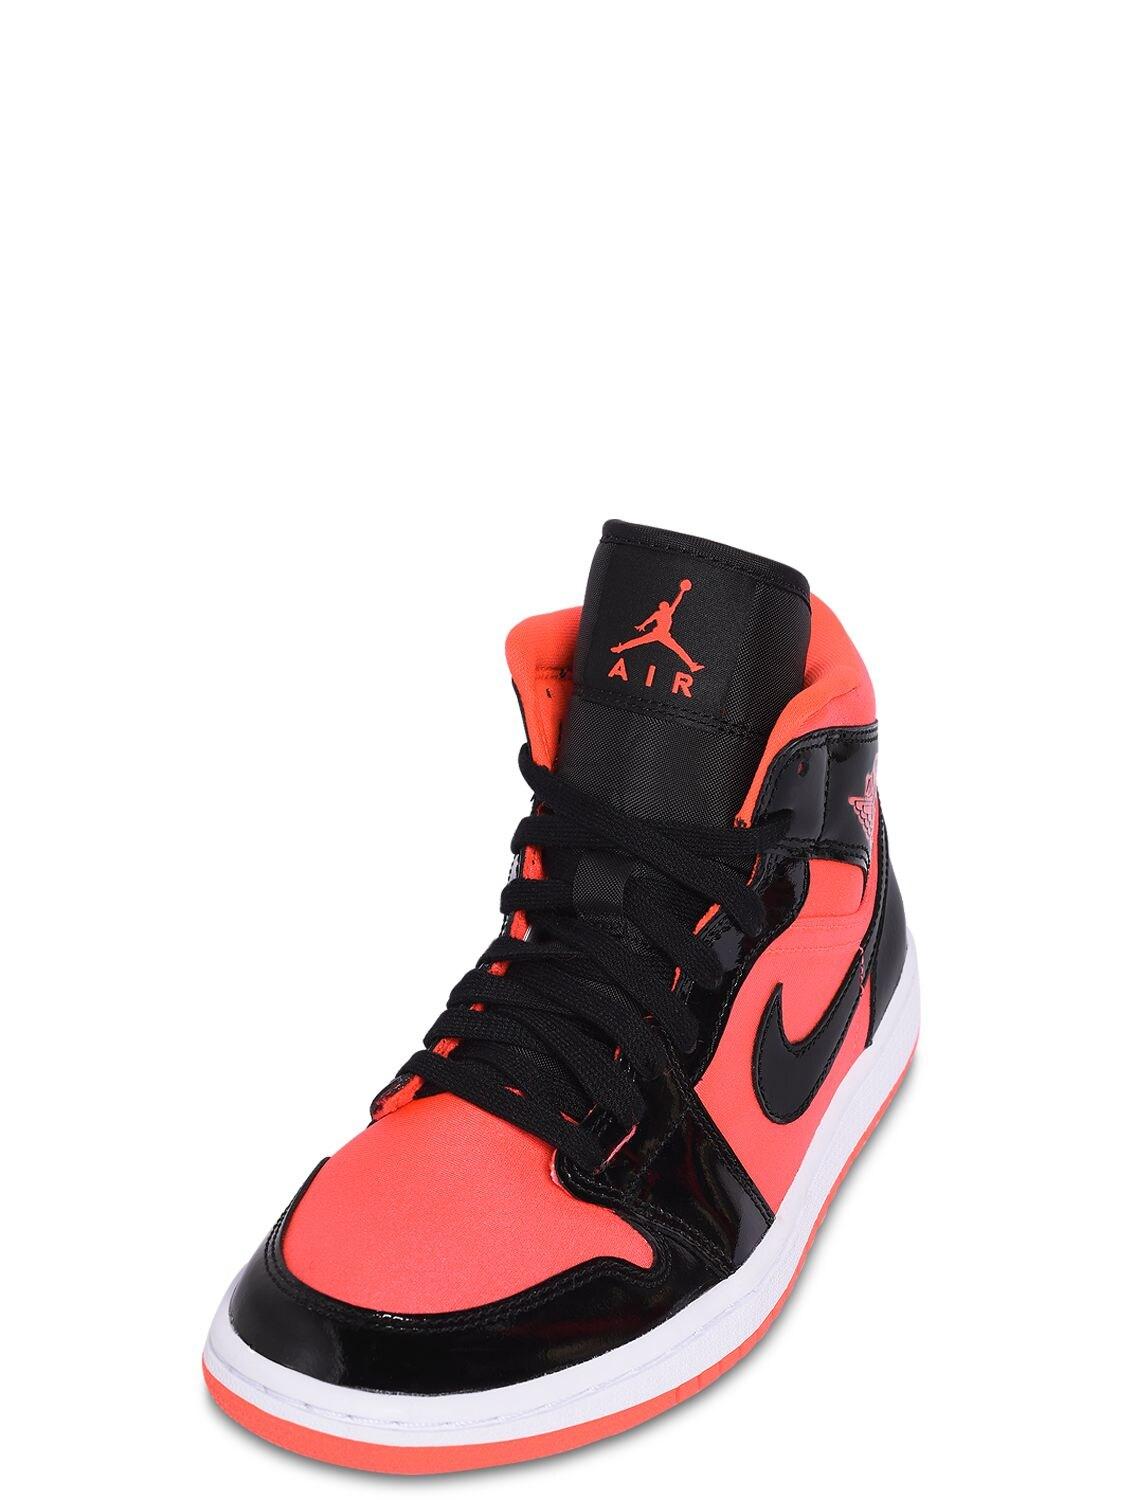 Nike Wmns Air Jordan 1 Mid Sneakers in Red | Lyst UK